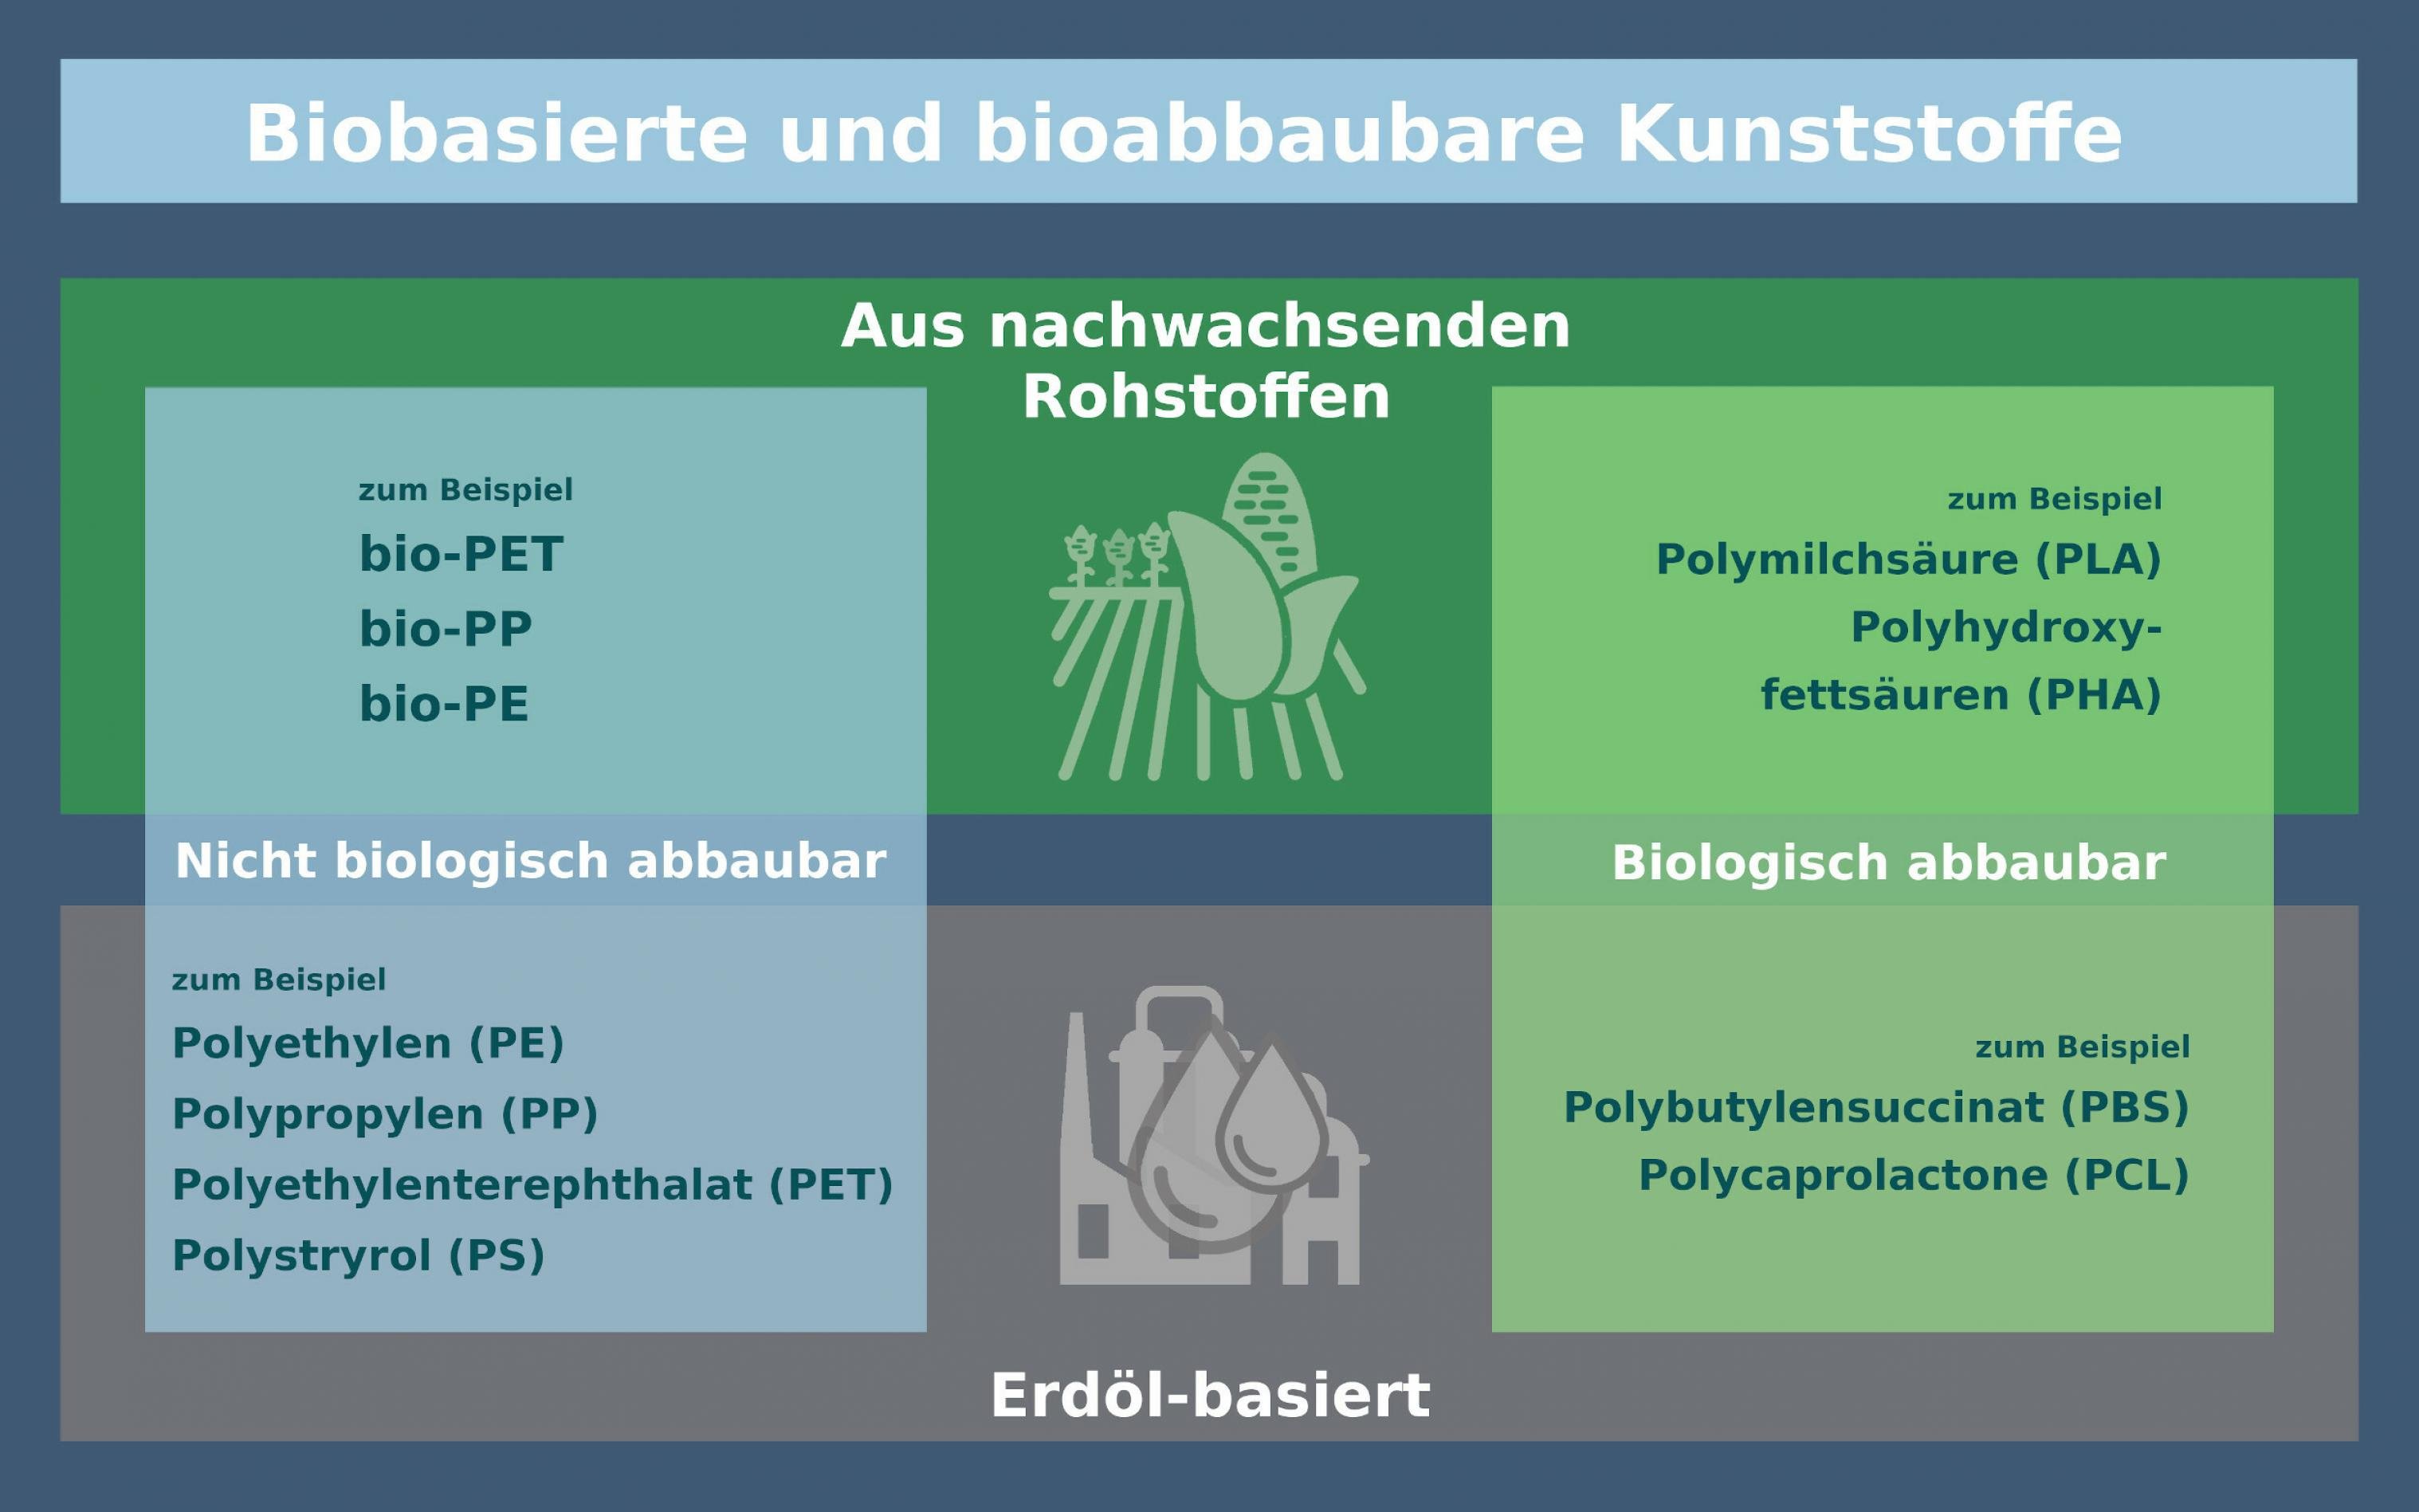 Schematische Übersicht über biobasierte und bioabbaubare Kunststoffe.